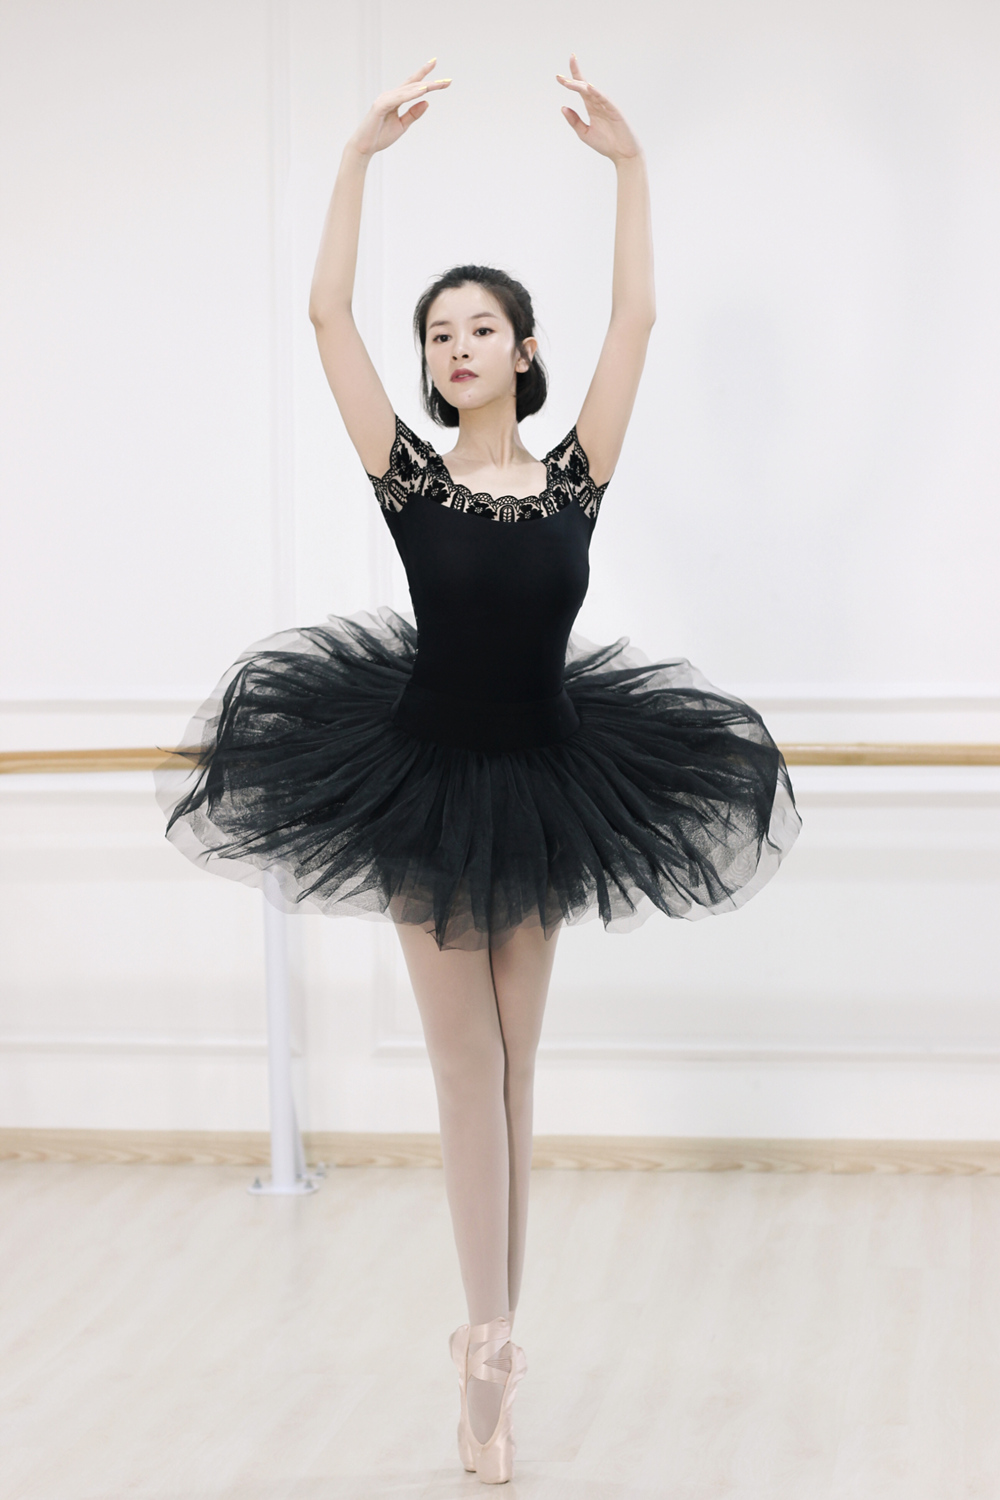 演员苏小妹曝光舞蹈写真 舞姿优美展现完美身材